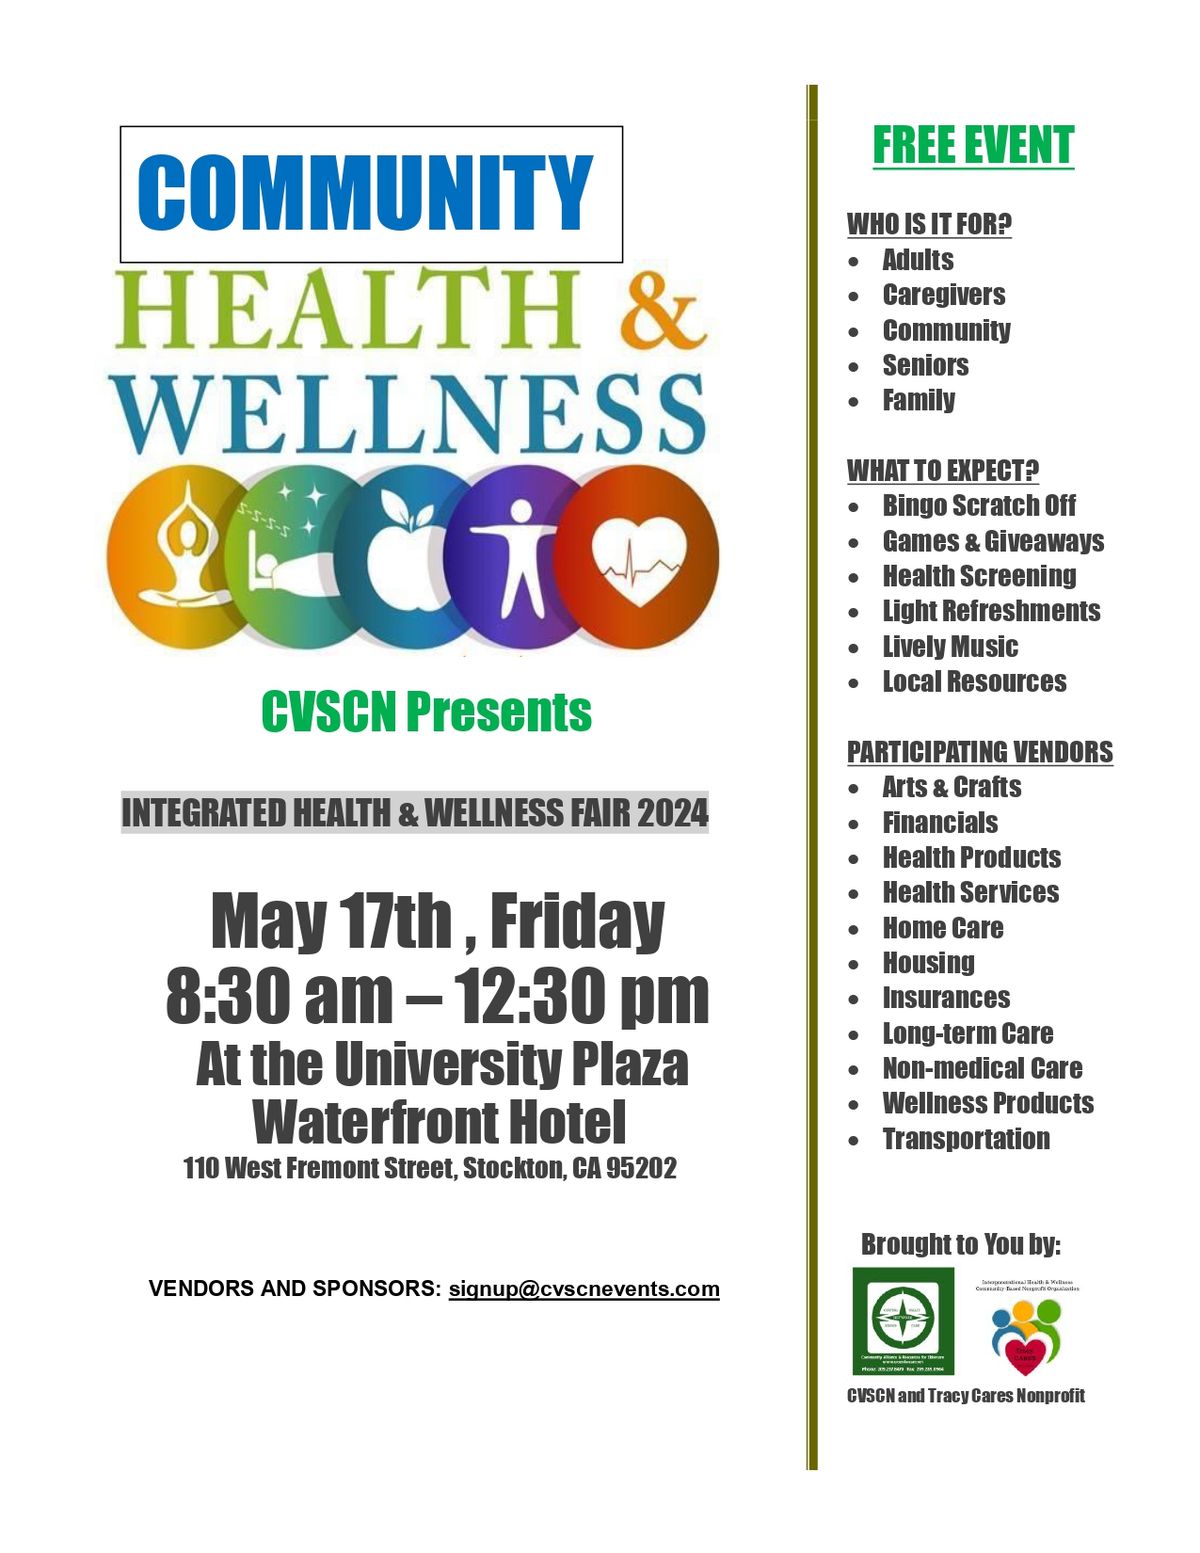 Community Health & Wellness Fair